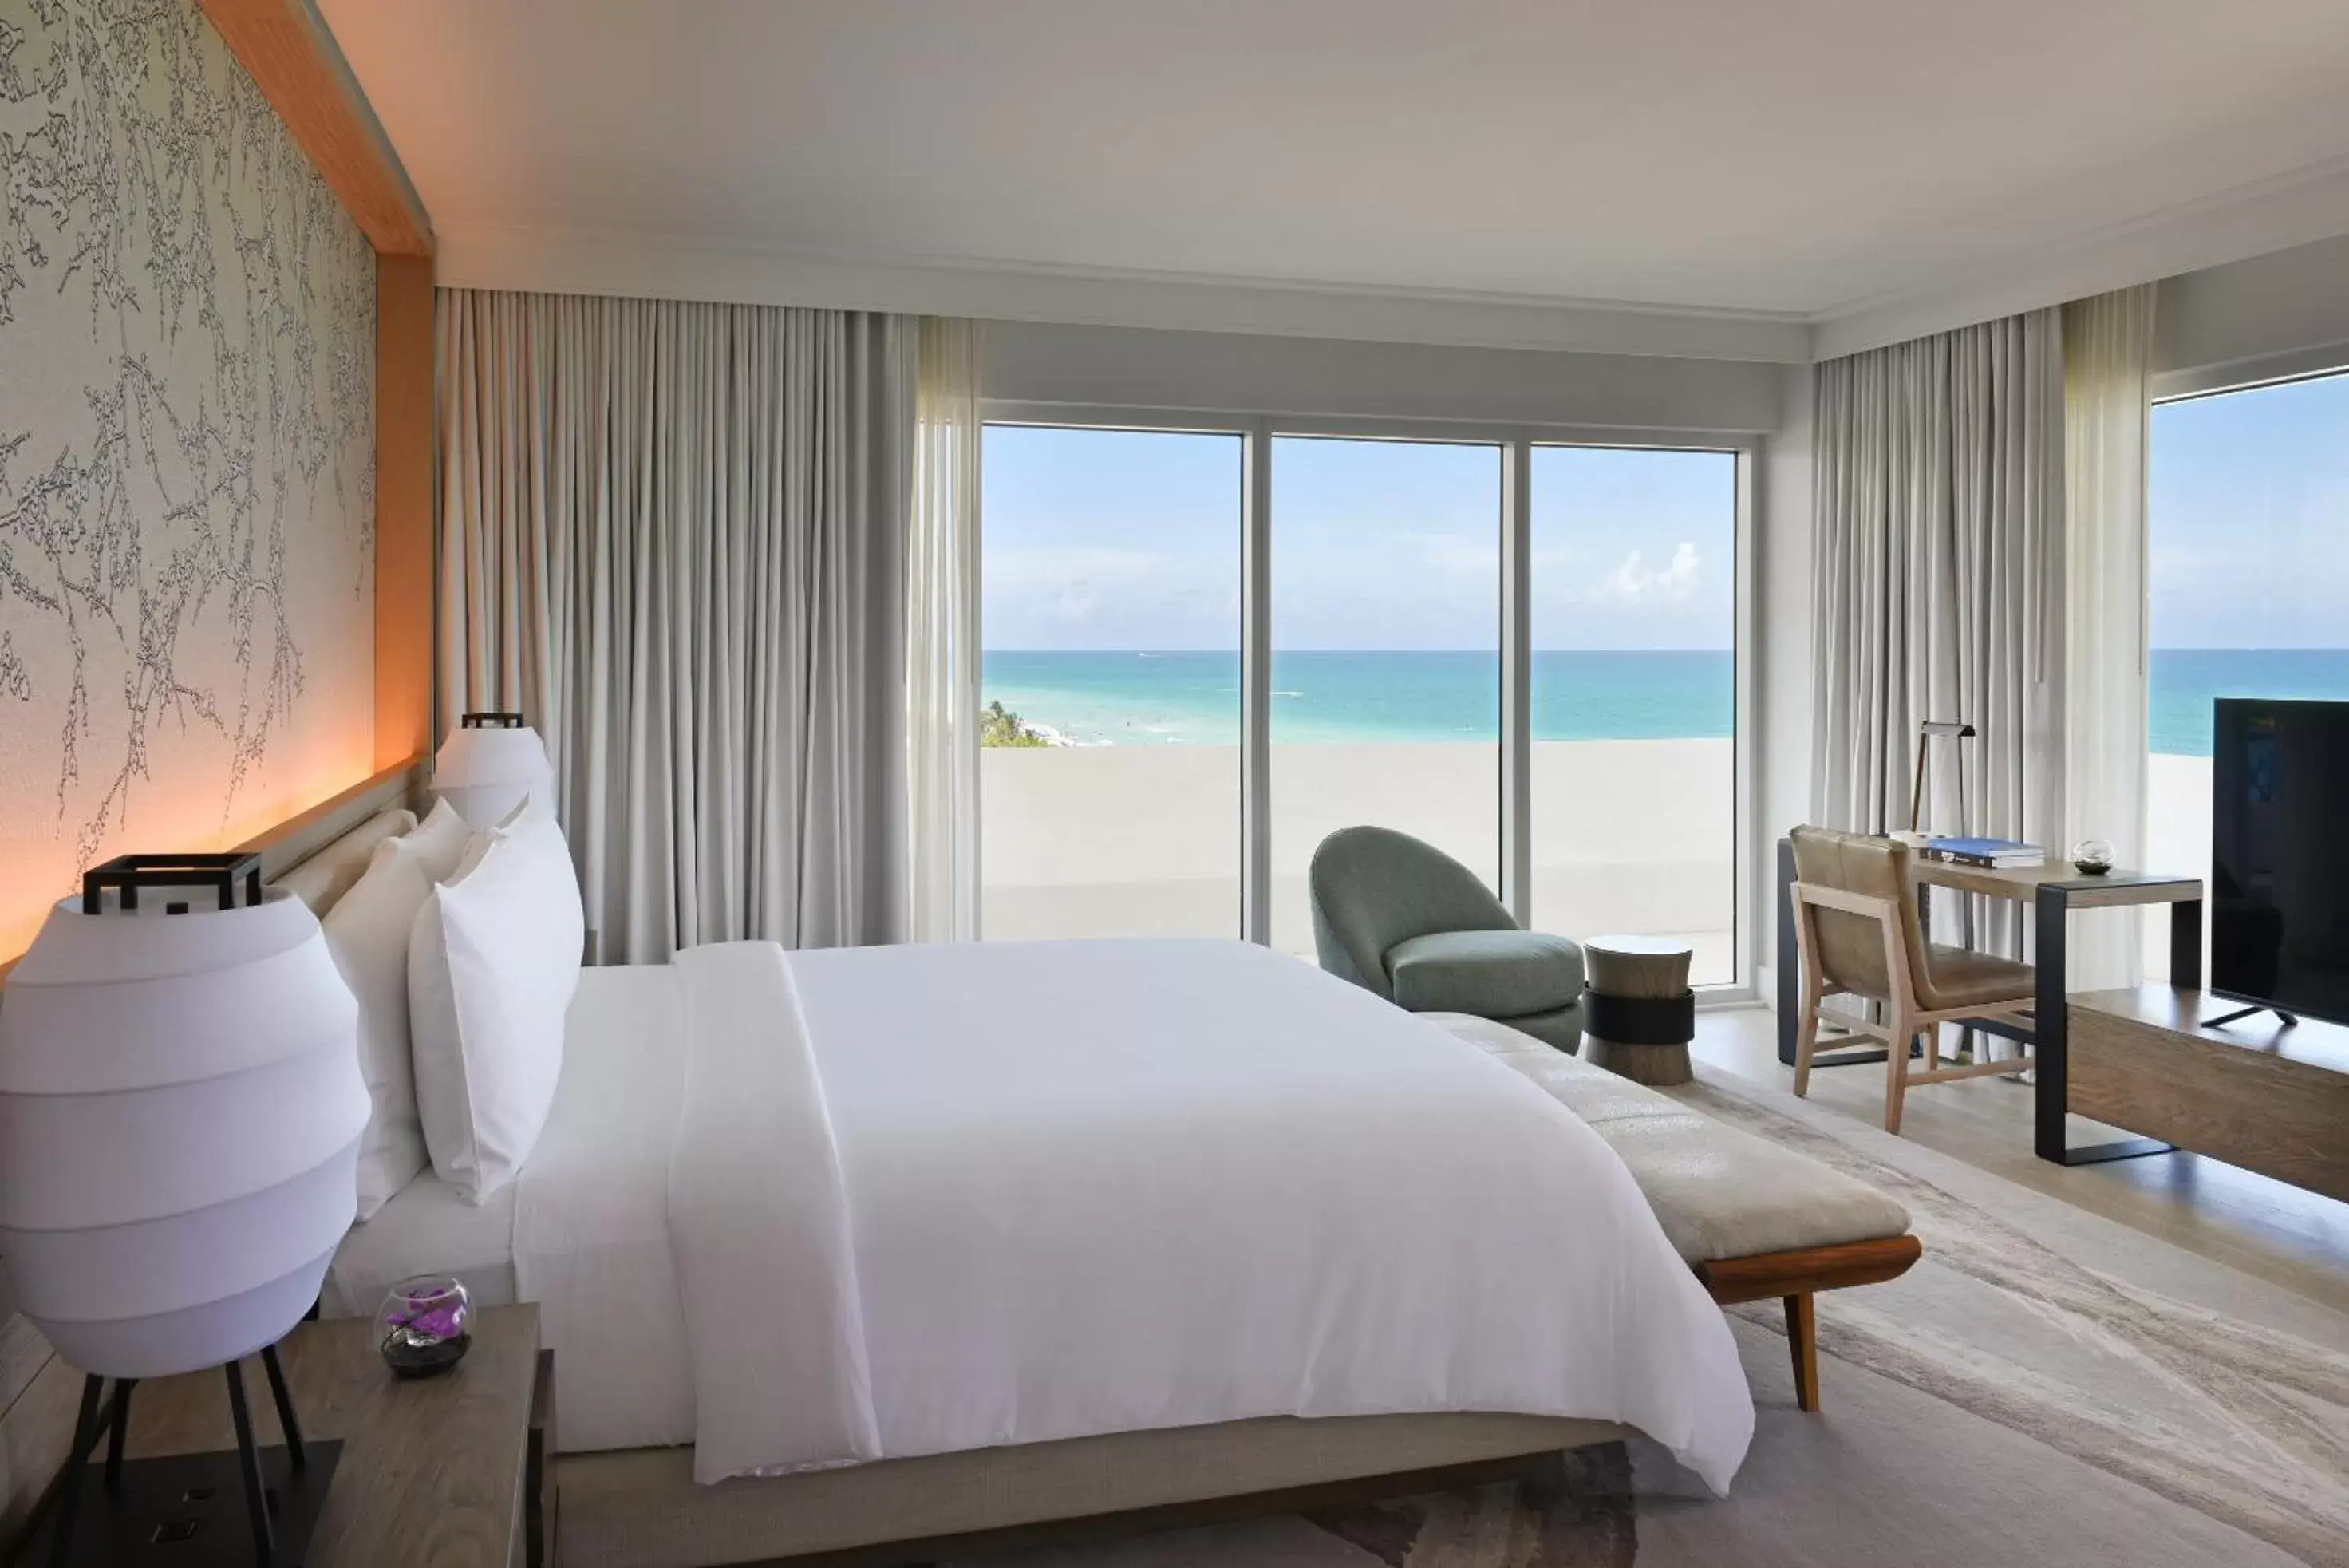 Sea view in Nobu Hotel Miami Beach